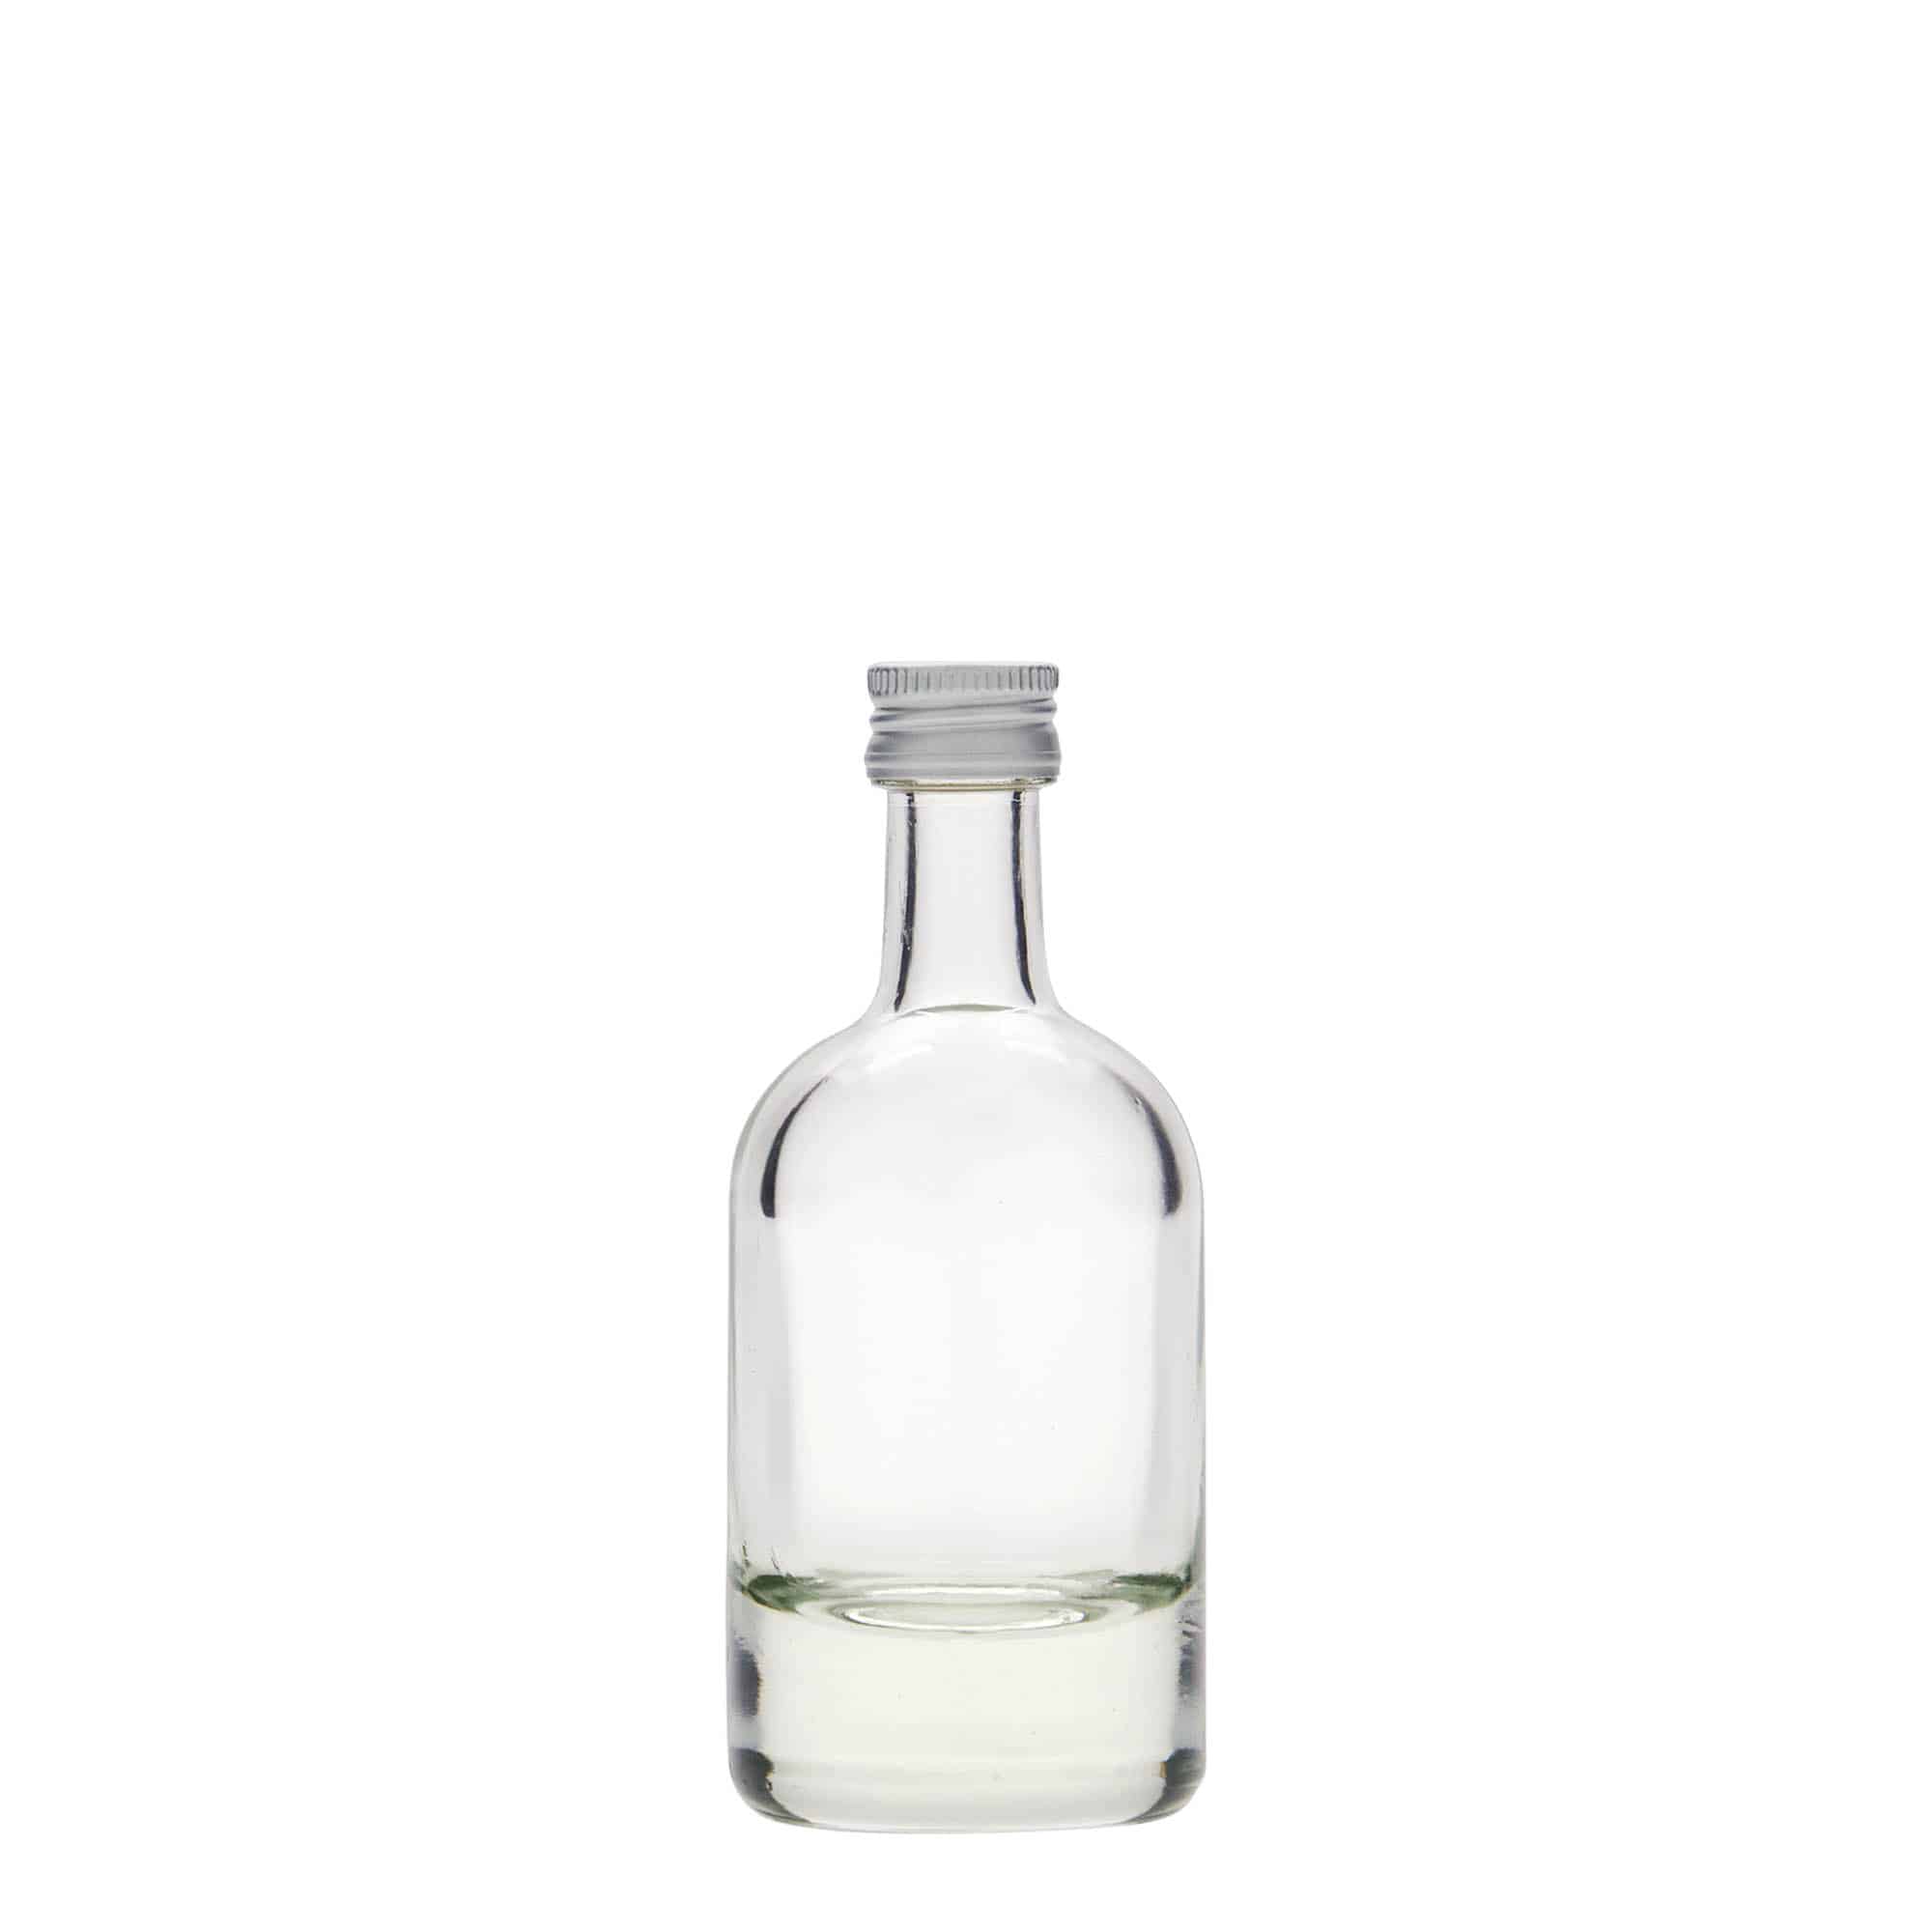 50 ml glass bottle 'Linea Uno', closure: PP 18